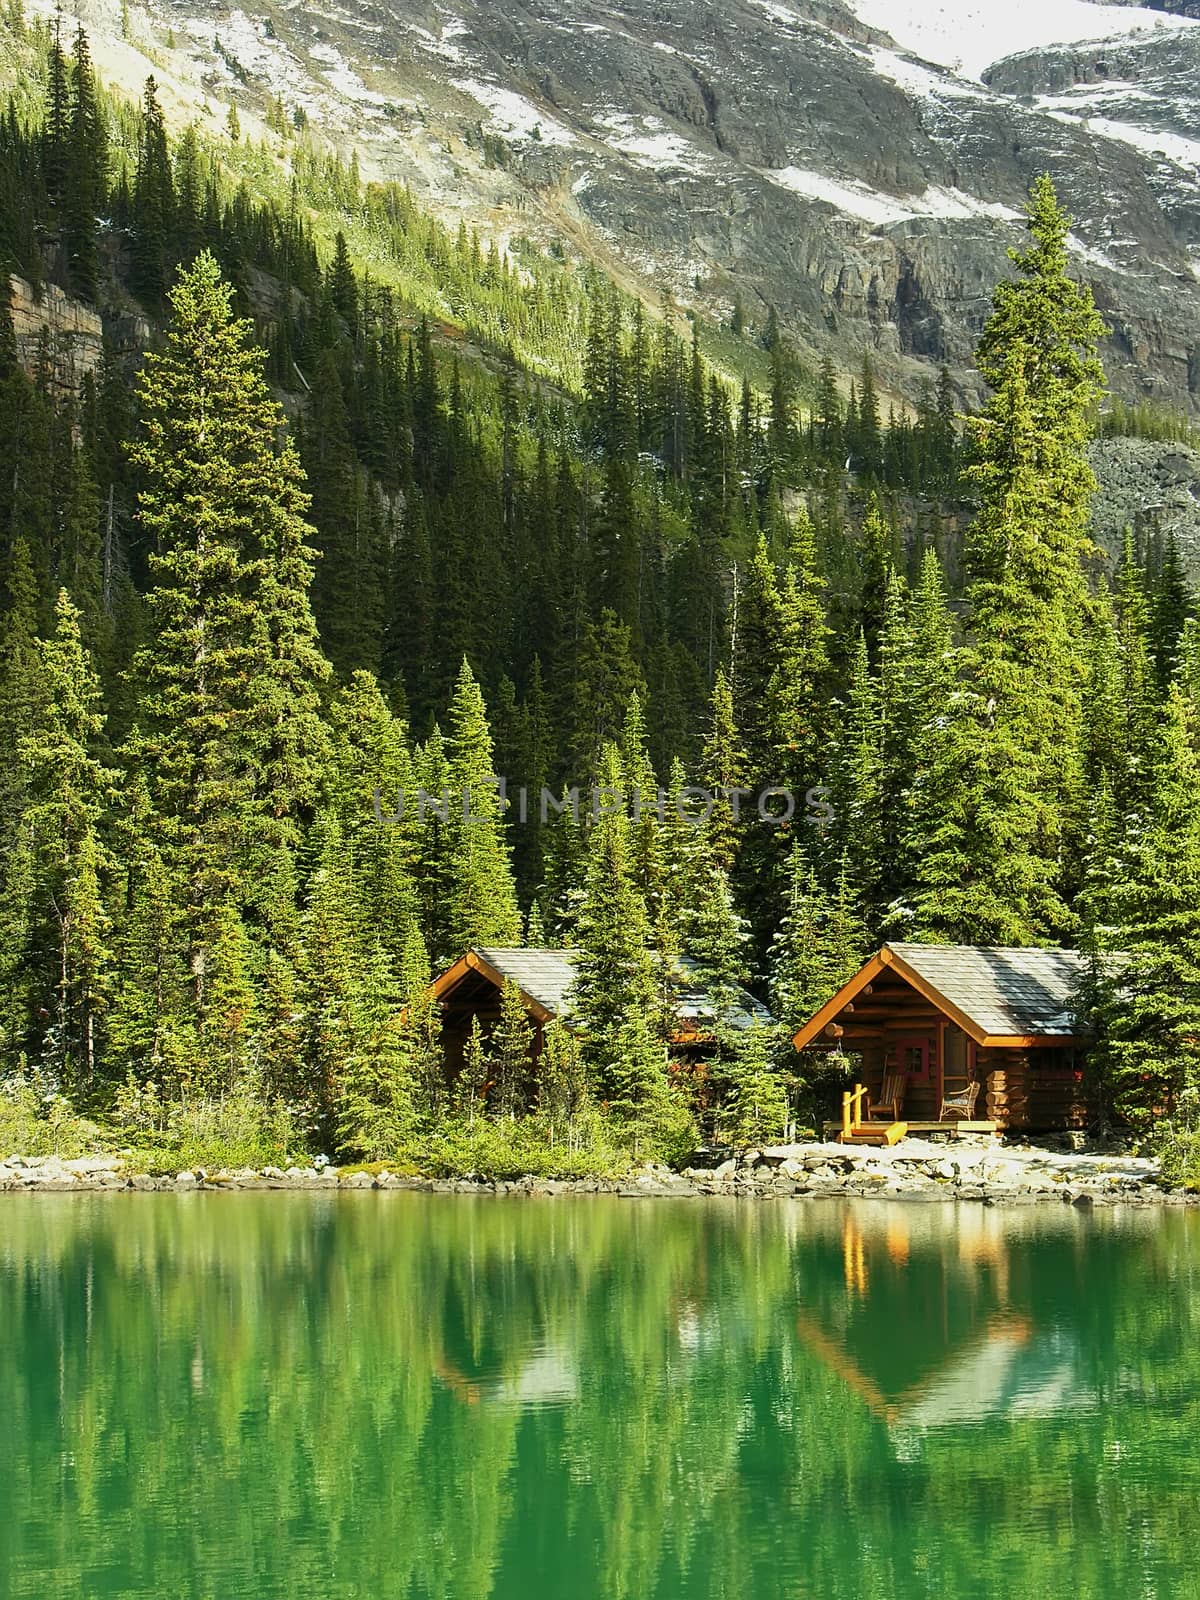 Wooden cabins at Lake O'Hara, Yoho National Park, Canada by donya_nedomam